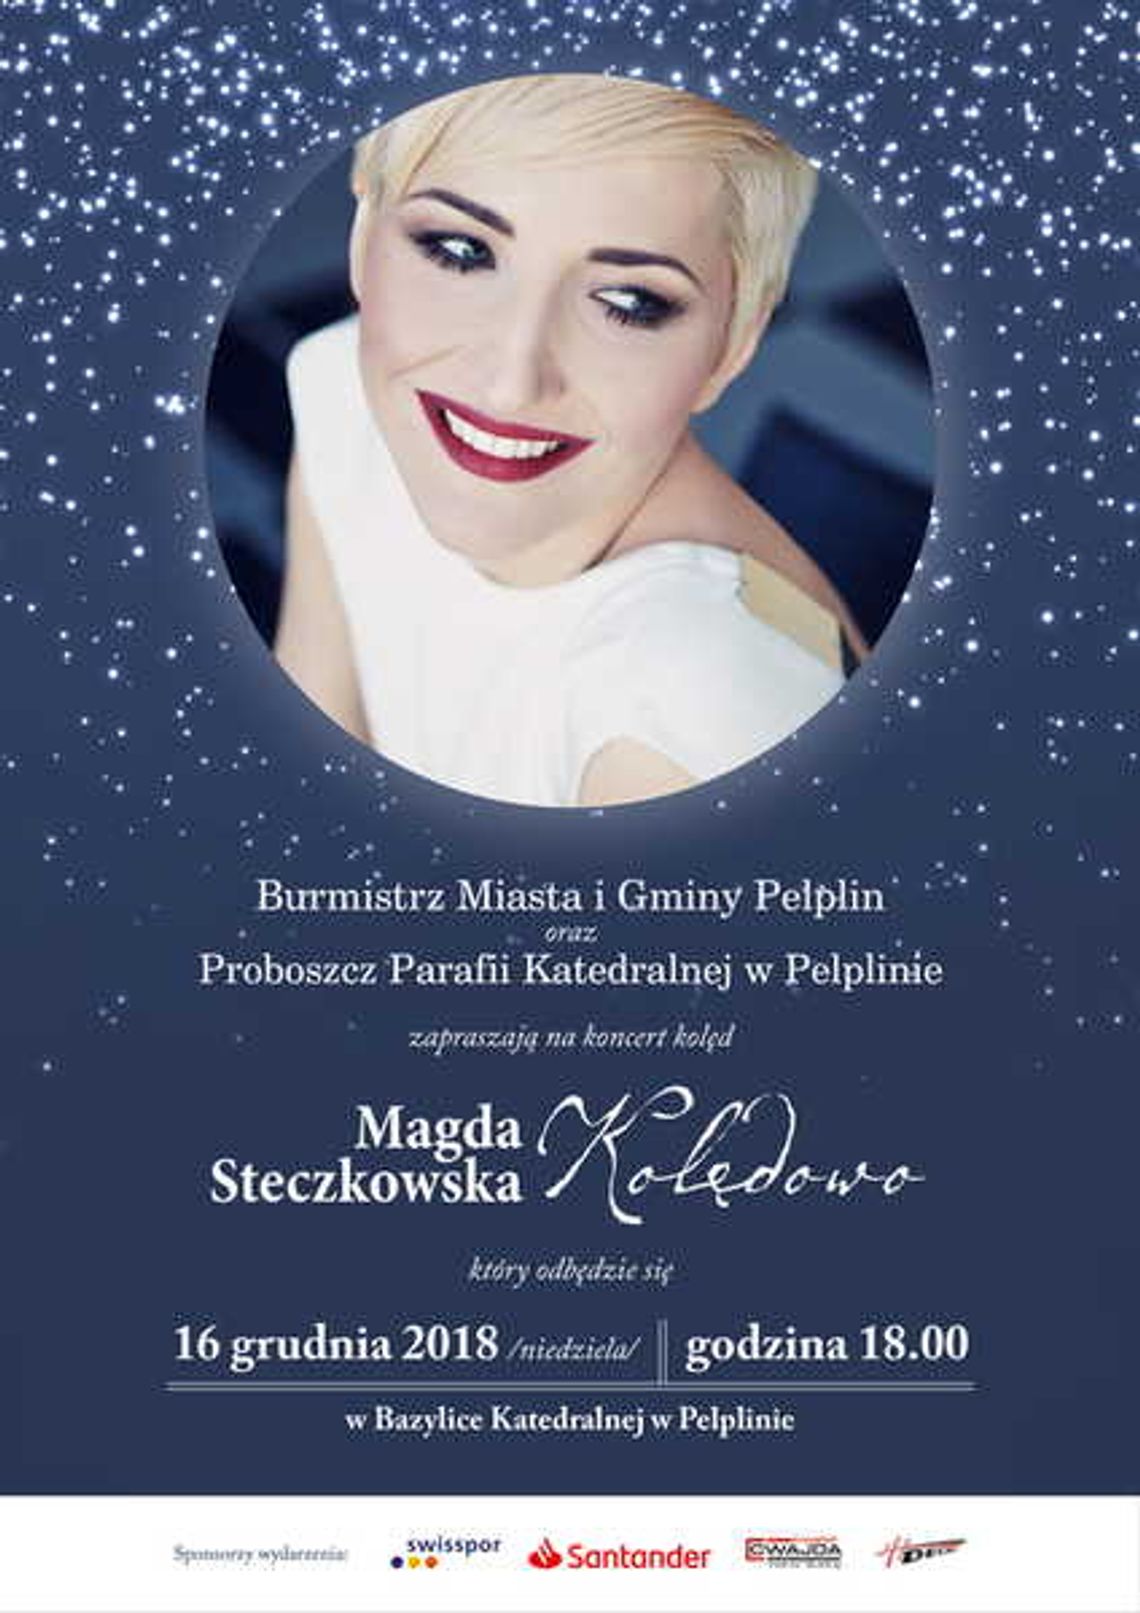  Świąteczny koncert Magdy Steczkowskiej.